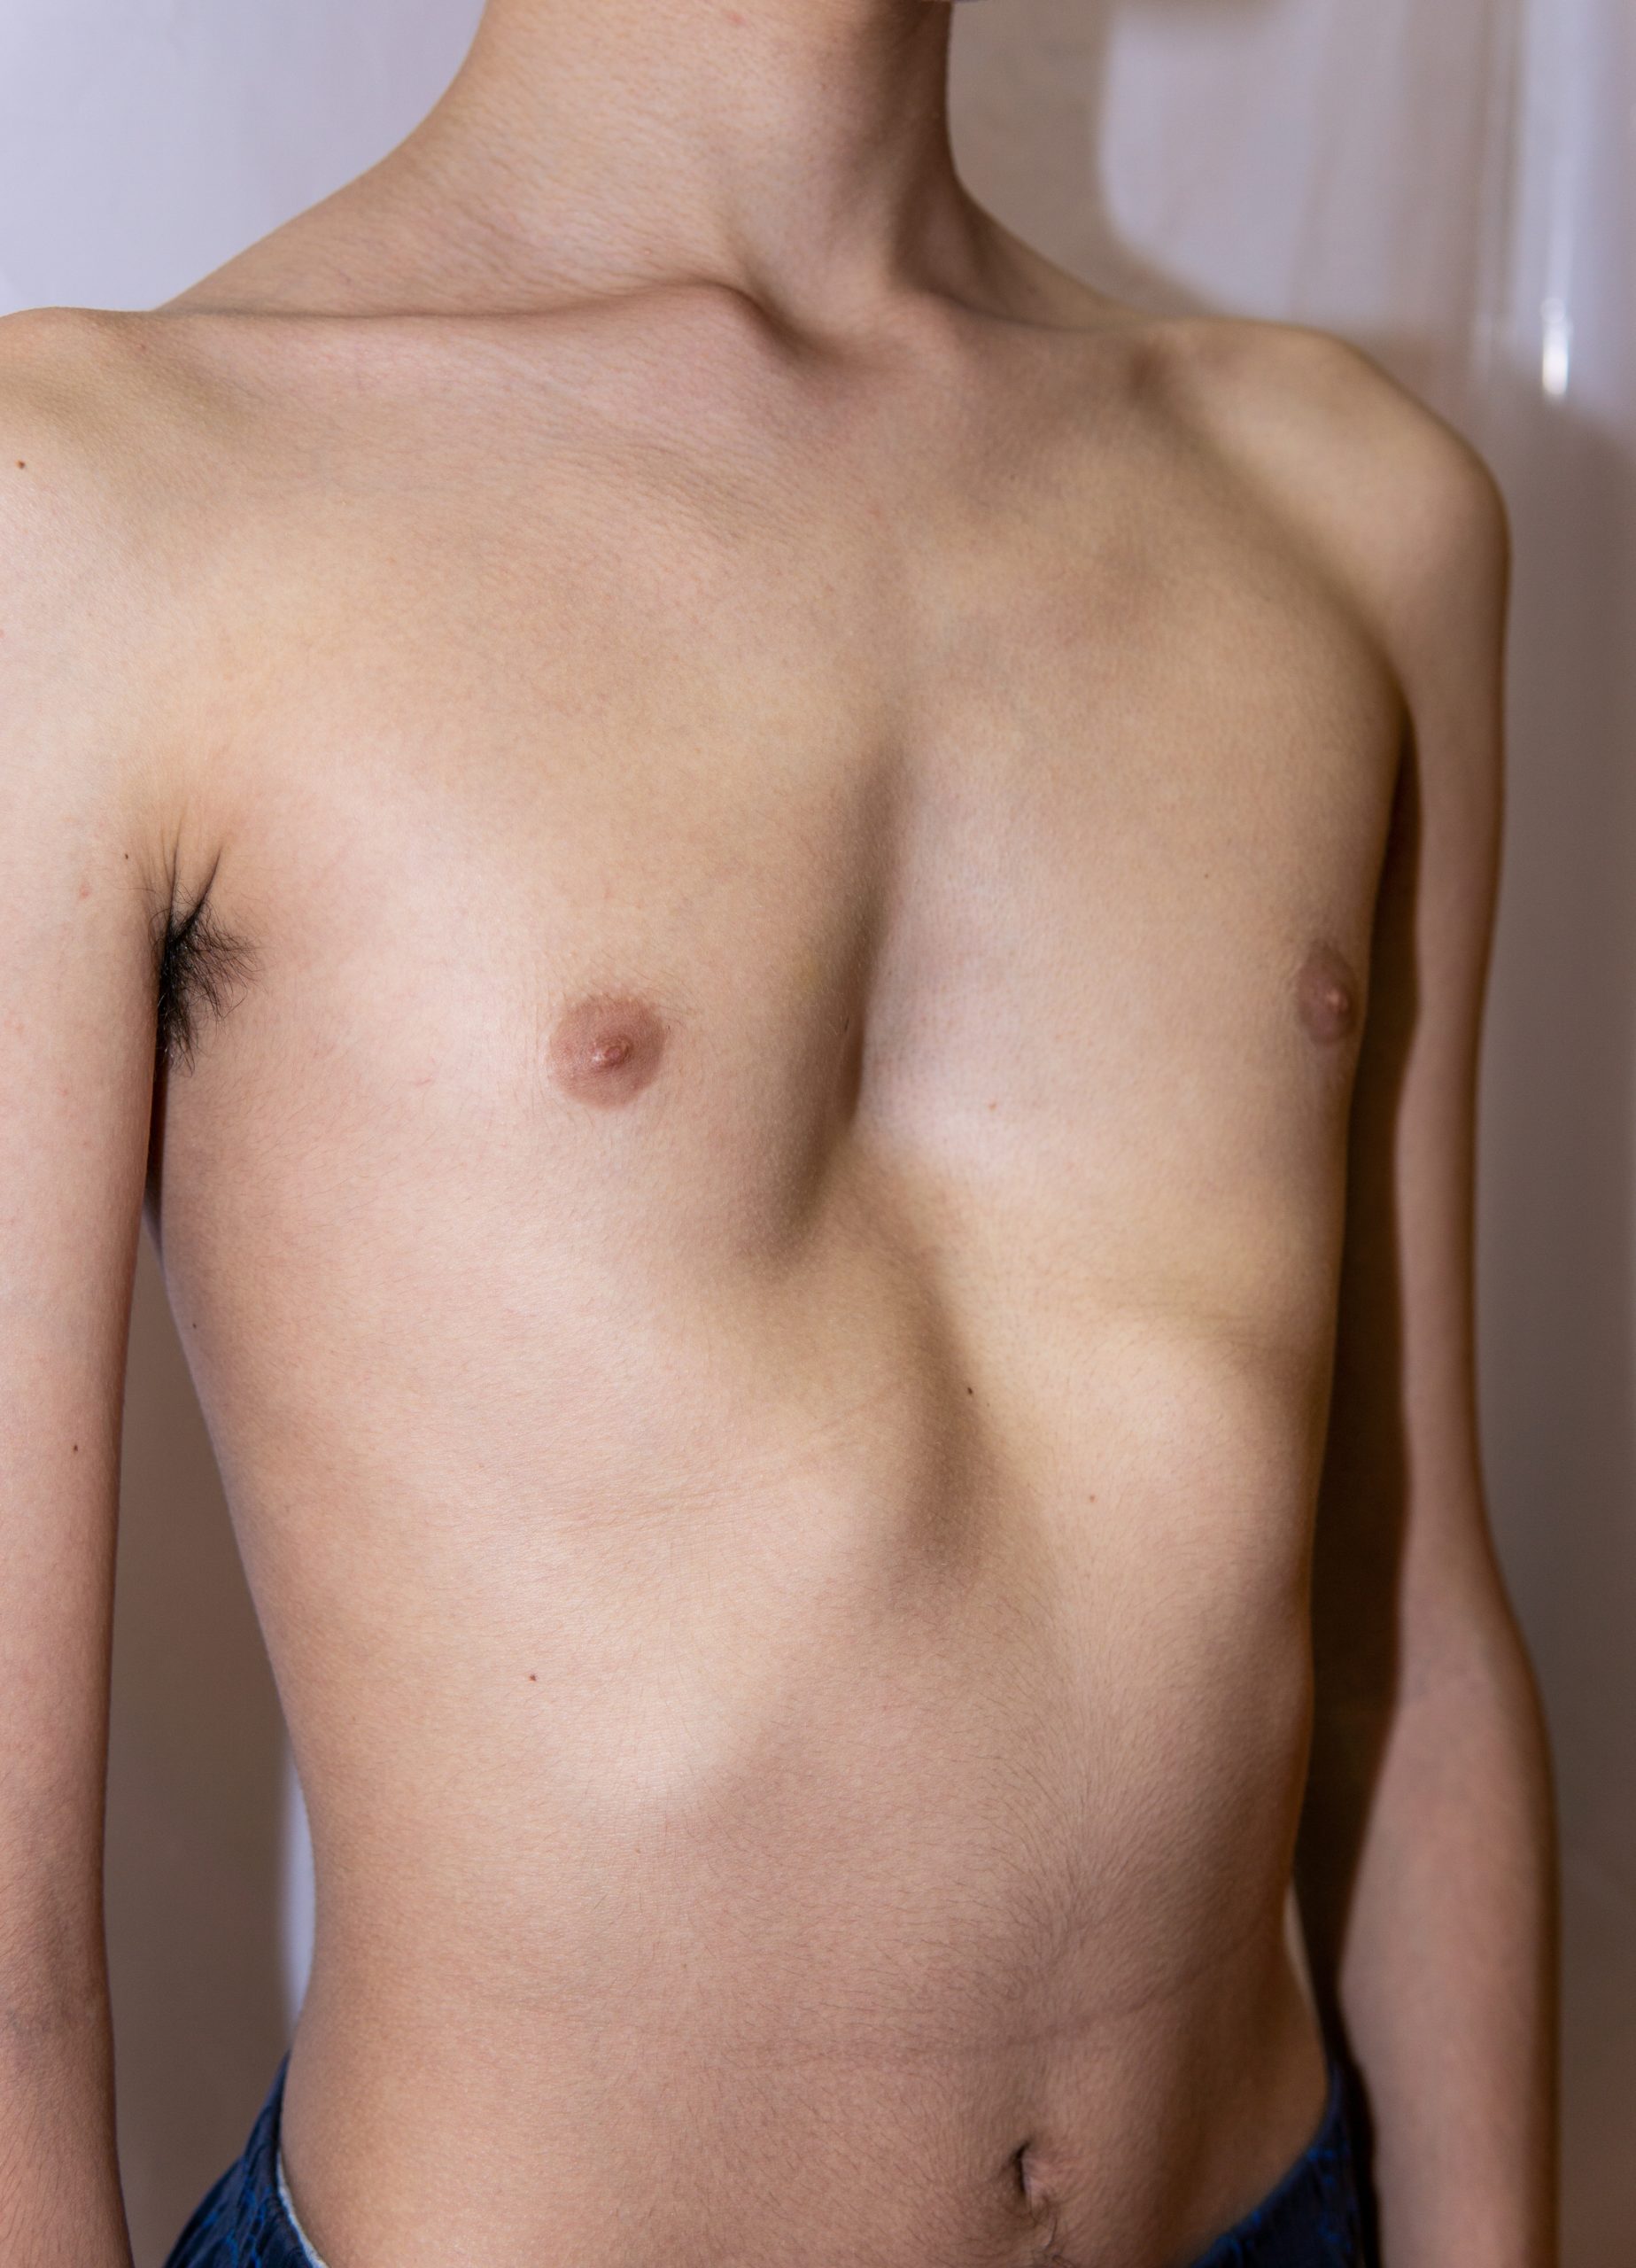 teenage boy with Pectus excavatum also known as sunken chest